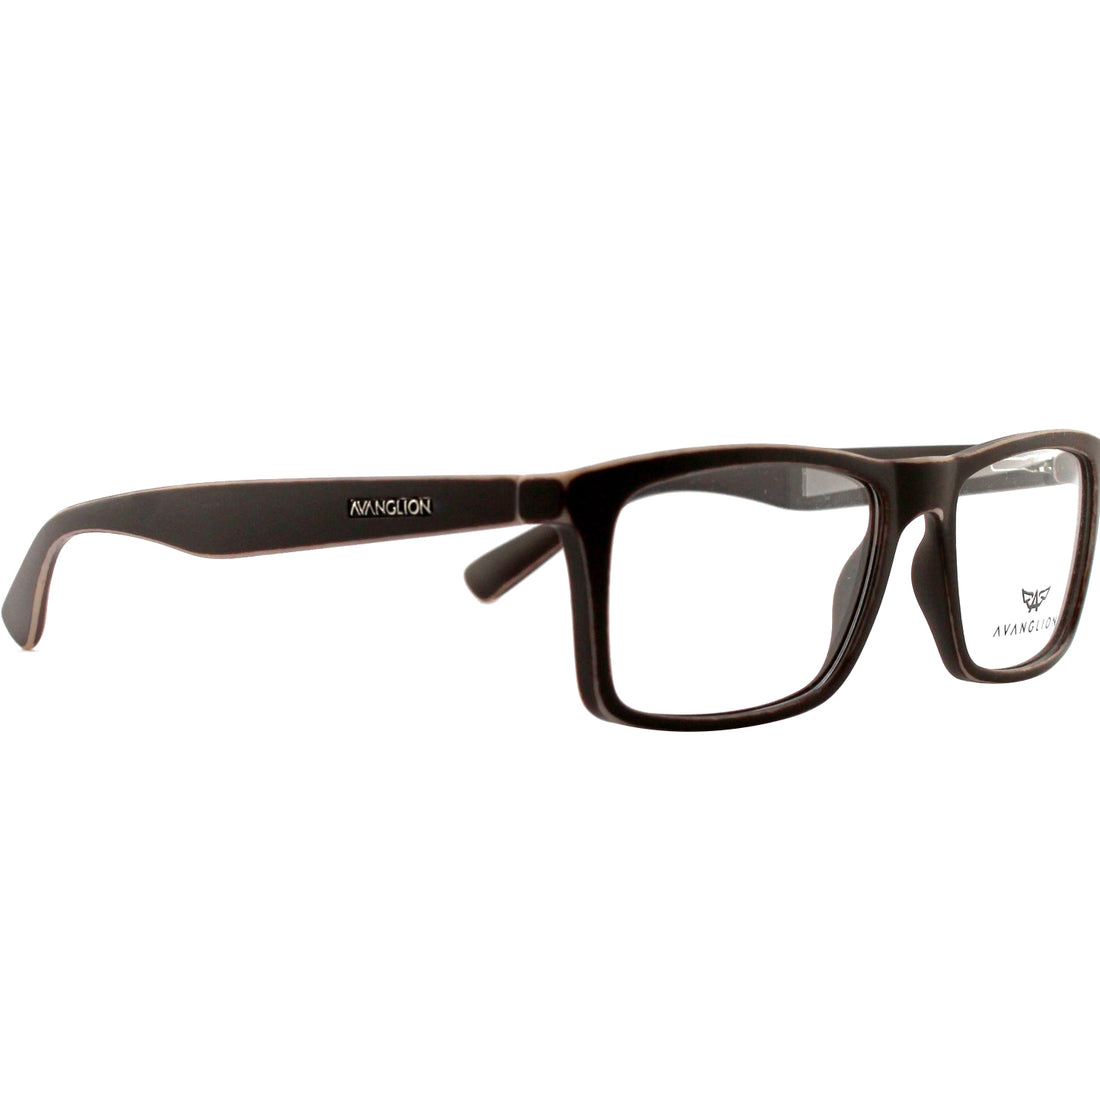 Monture de lunettes Avanglion | Modèle AV10910